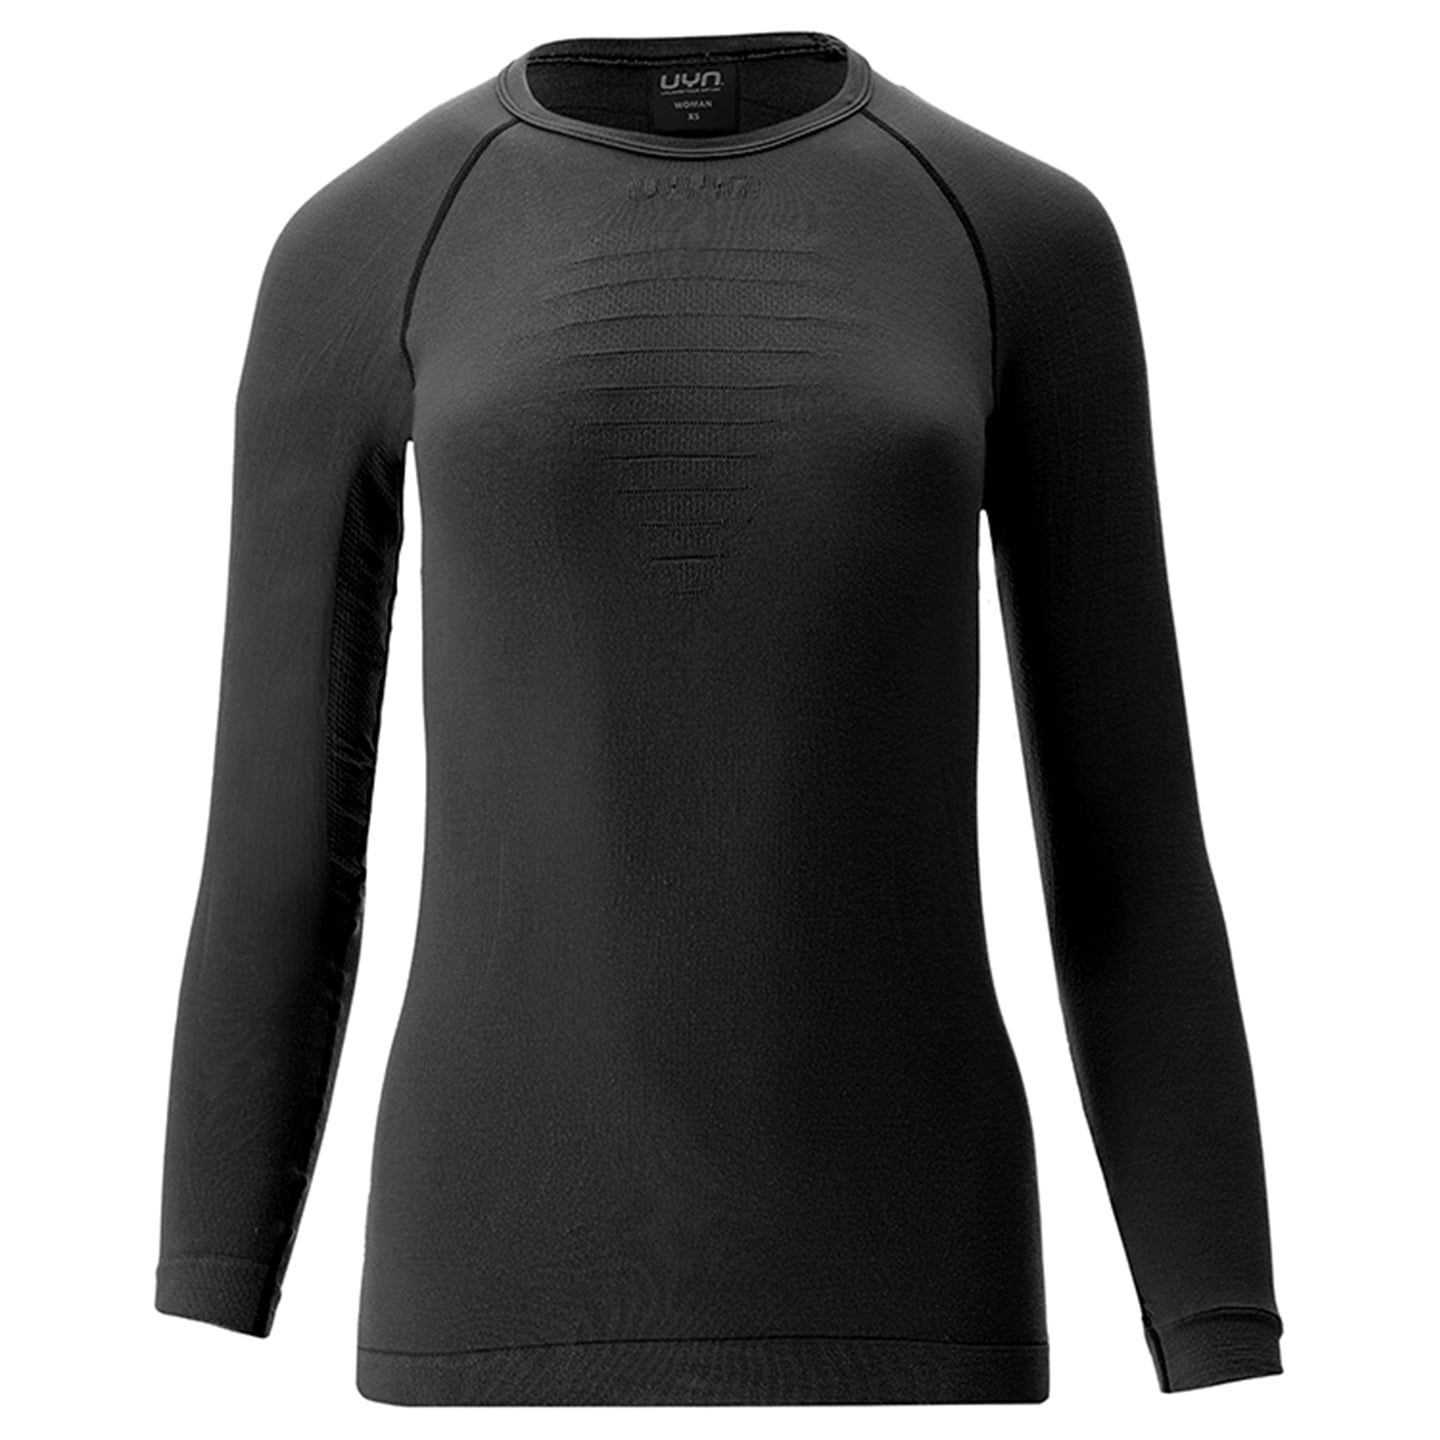 UYN Women’s Long Sleeve Cycling Undershirt Energyon Biotech UW Women’s Long Sleeve Base Layer, size XS